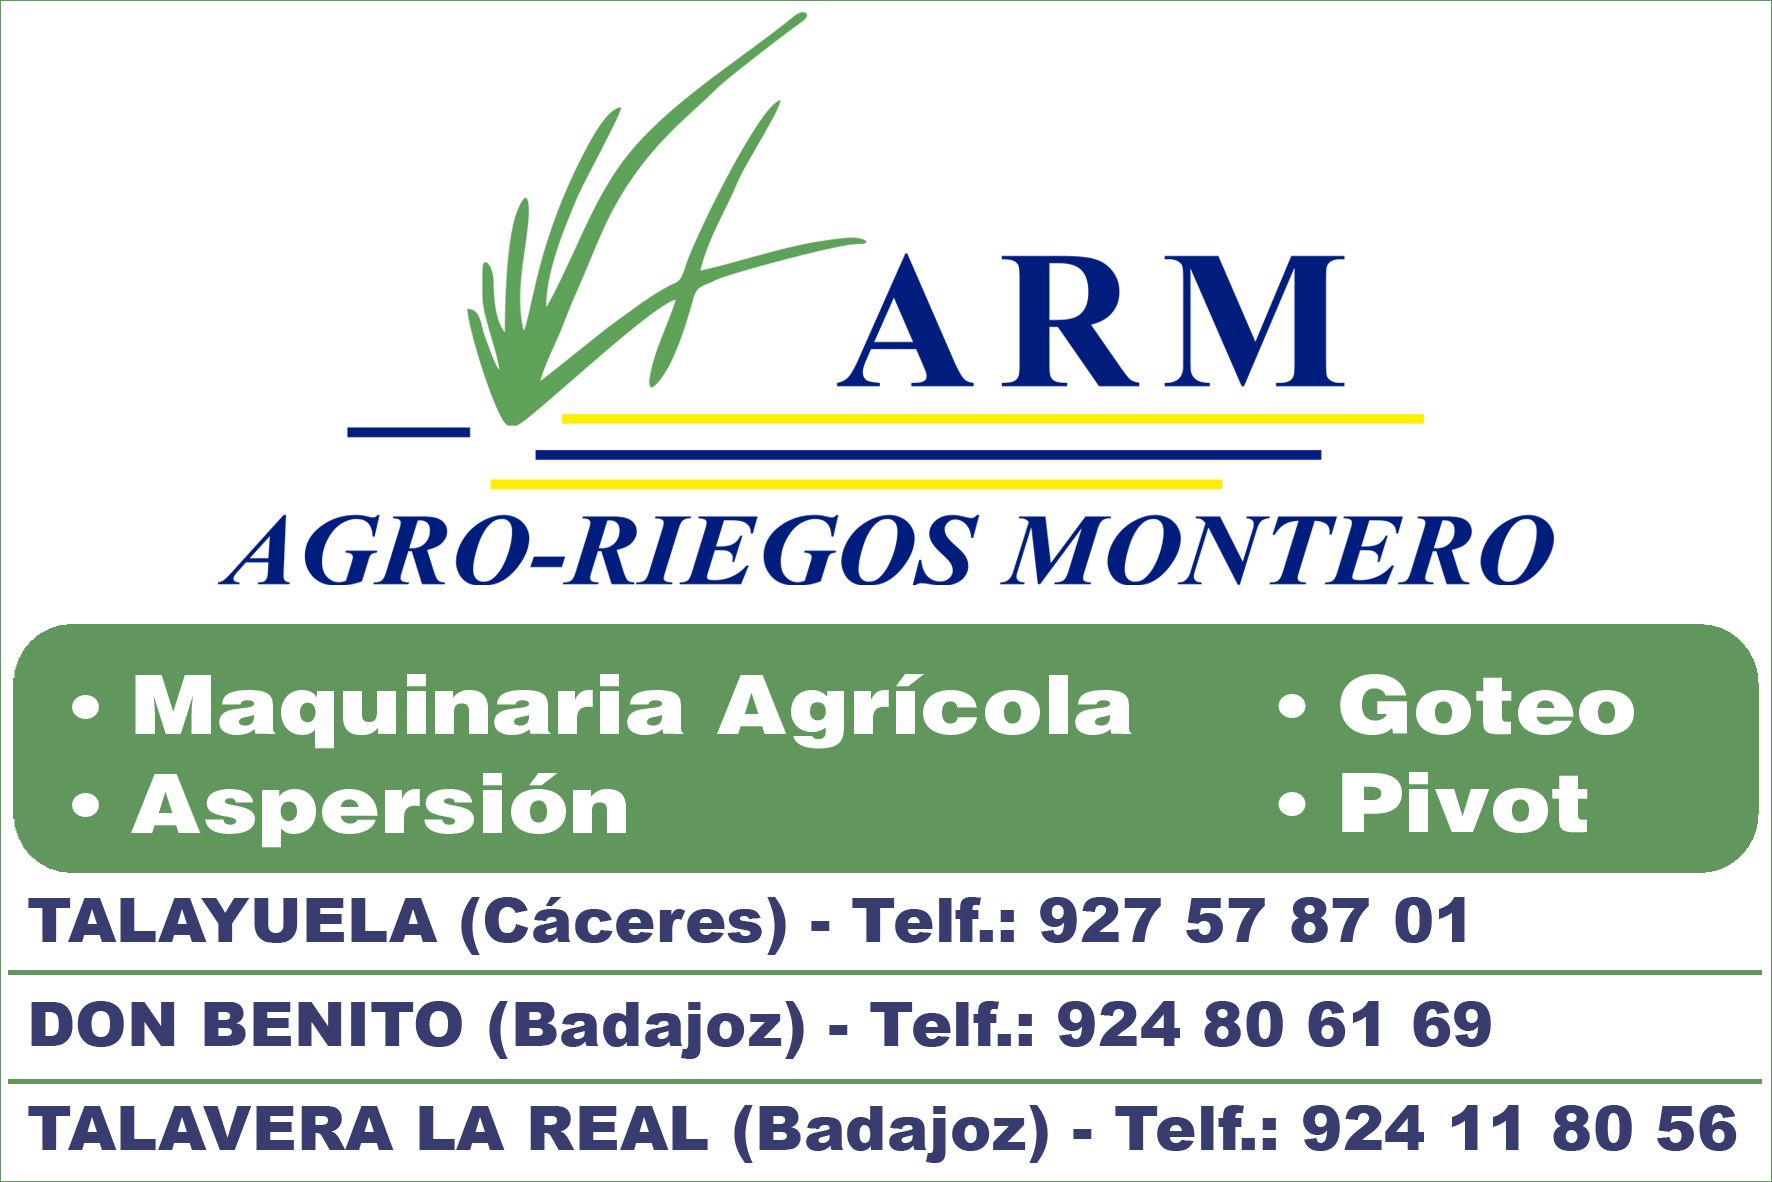 Agroriegos Montero